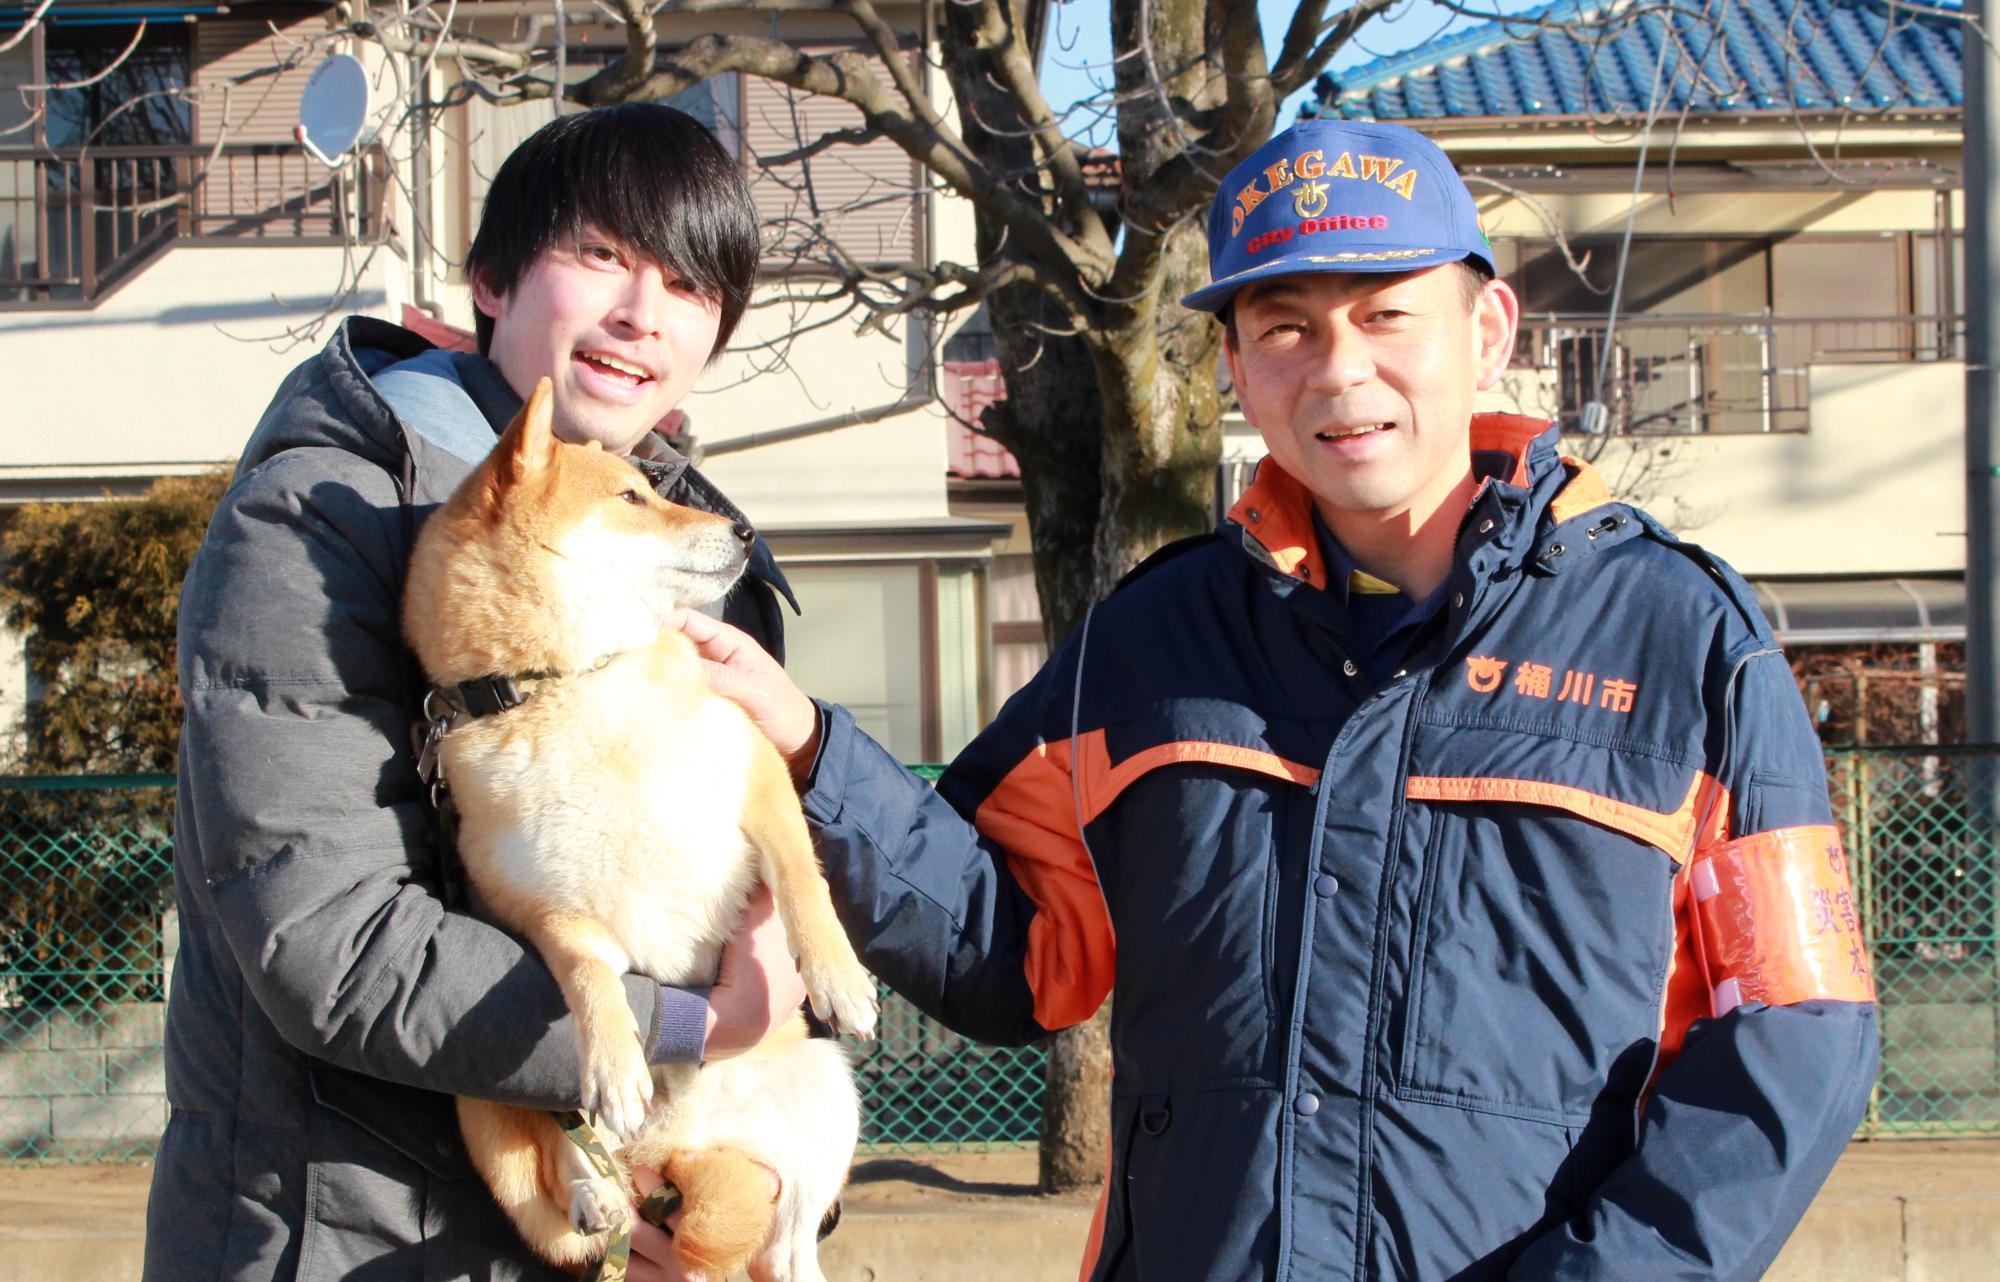 ペット同伴避難訓練の時の写真で、左側に犬を抱きかかえた人がいて、その右側に市長がいる